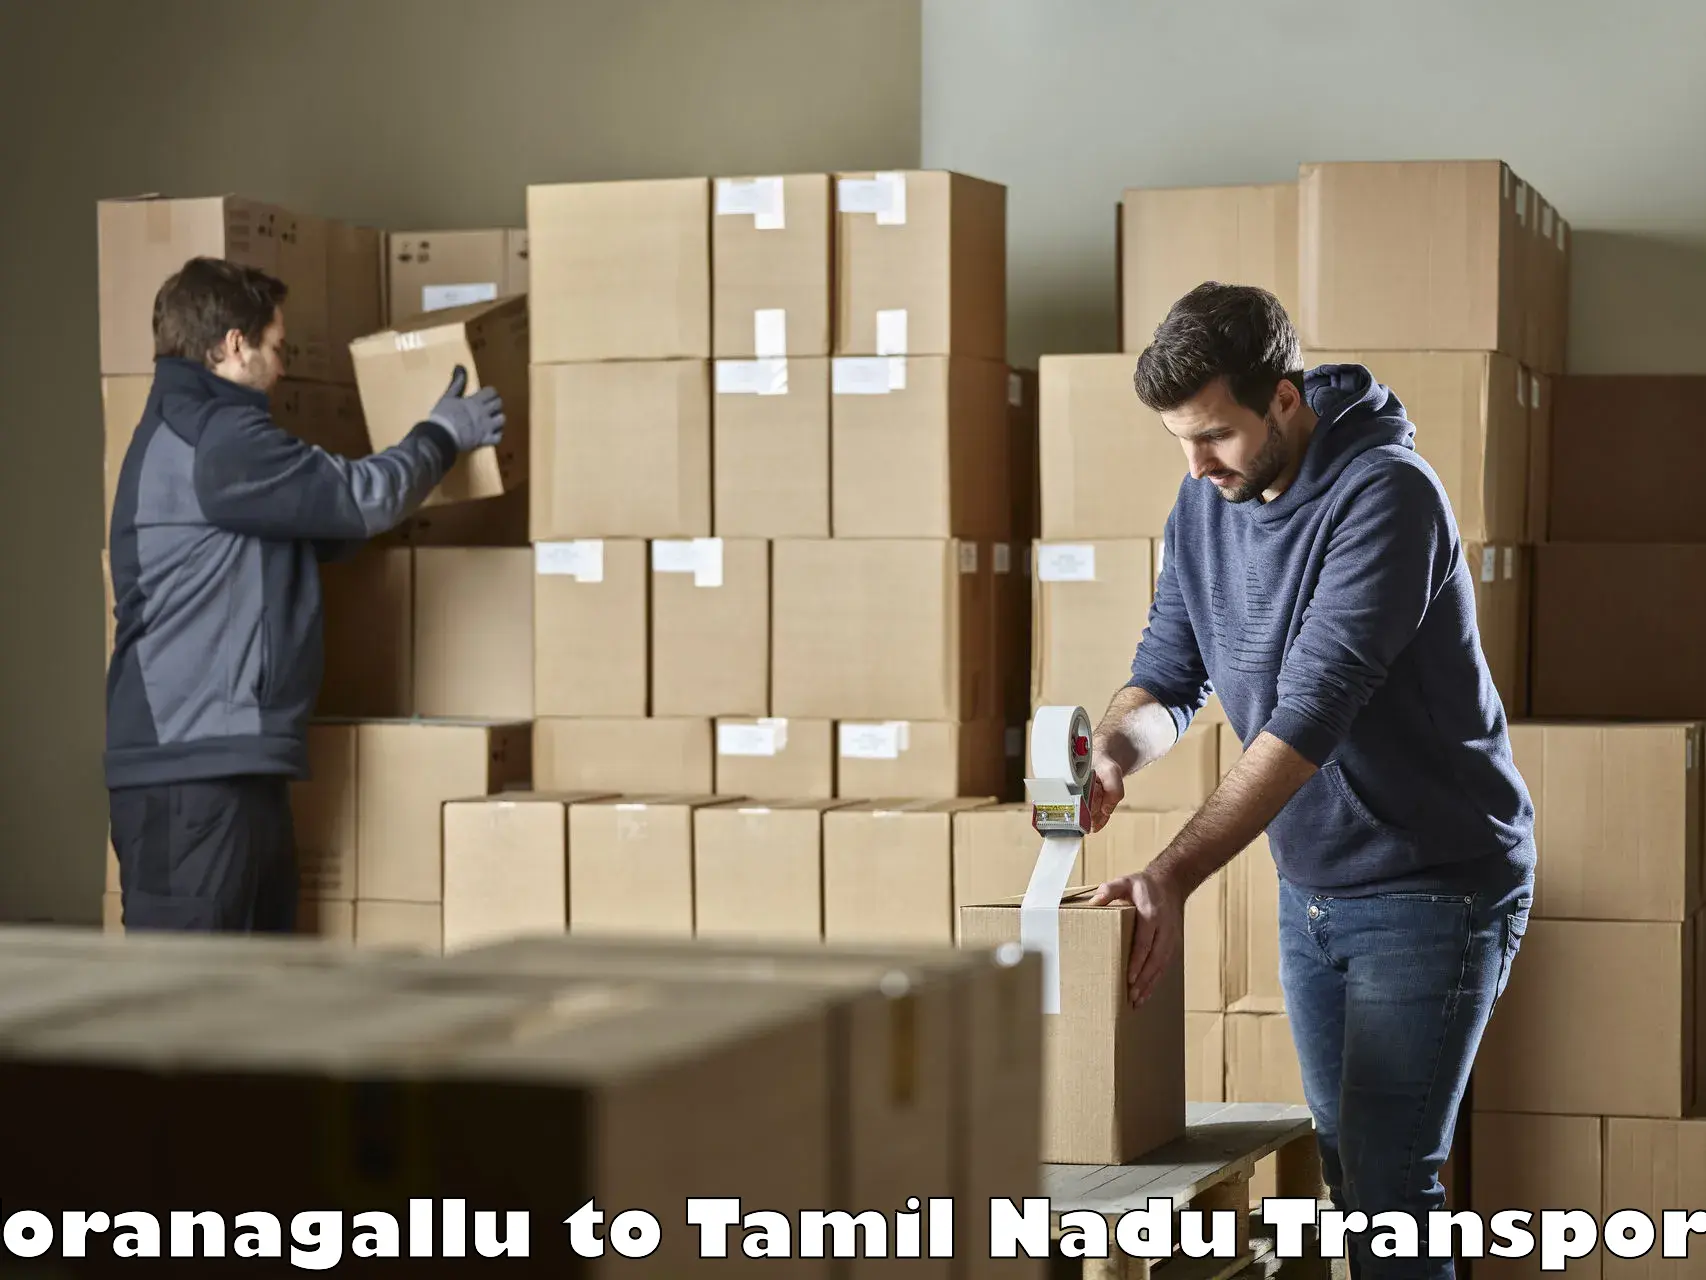 Intercity transport Toranagallu to Tamil Nadu